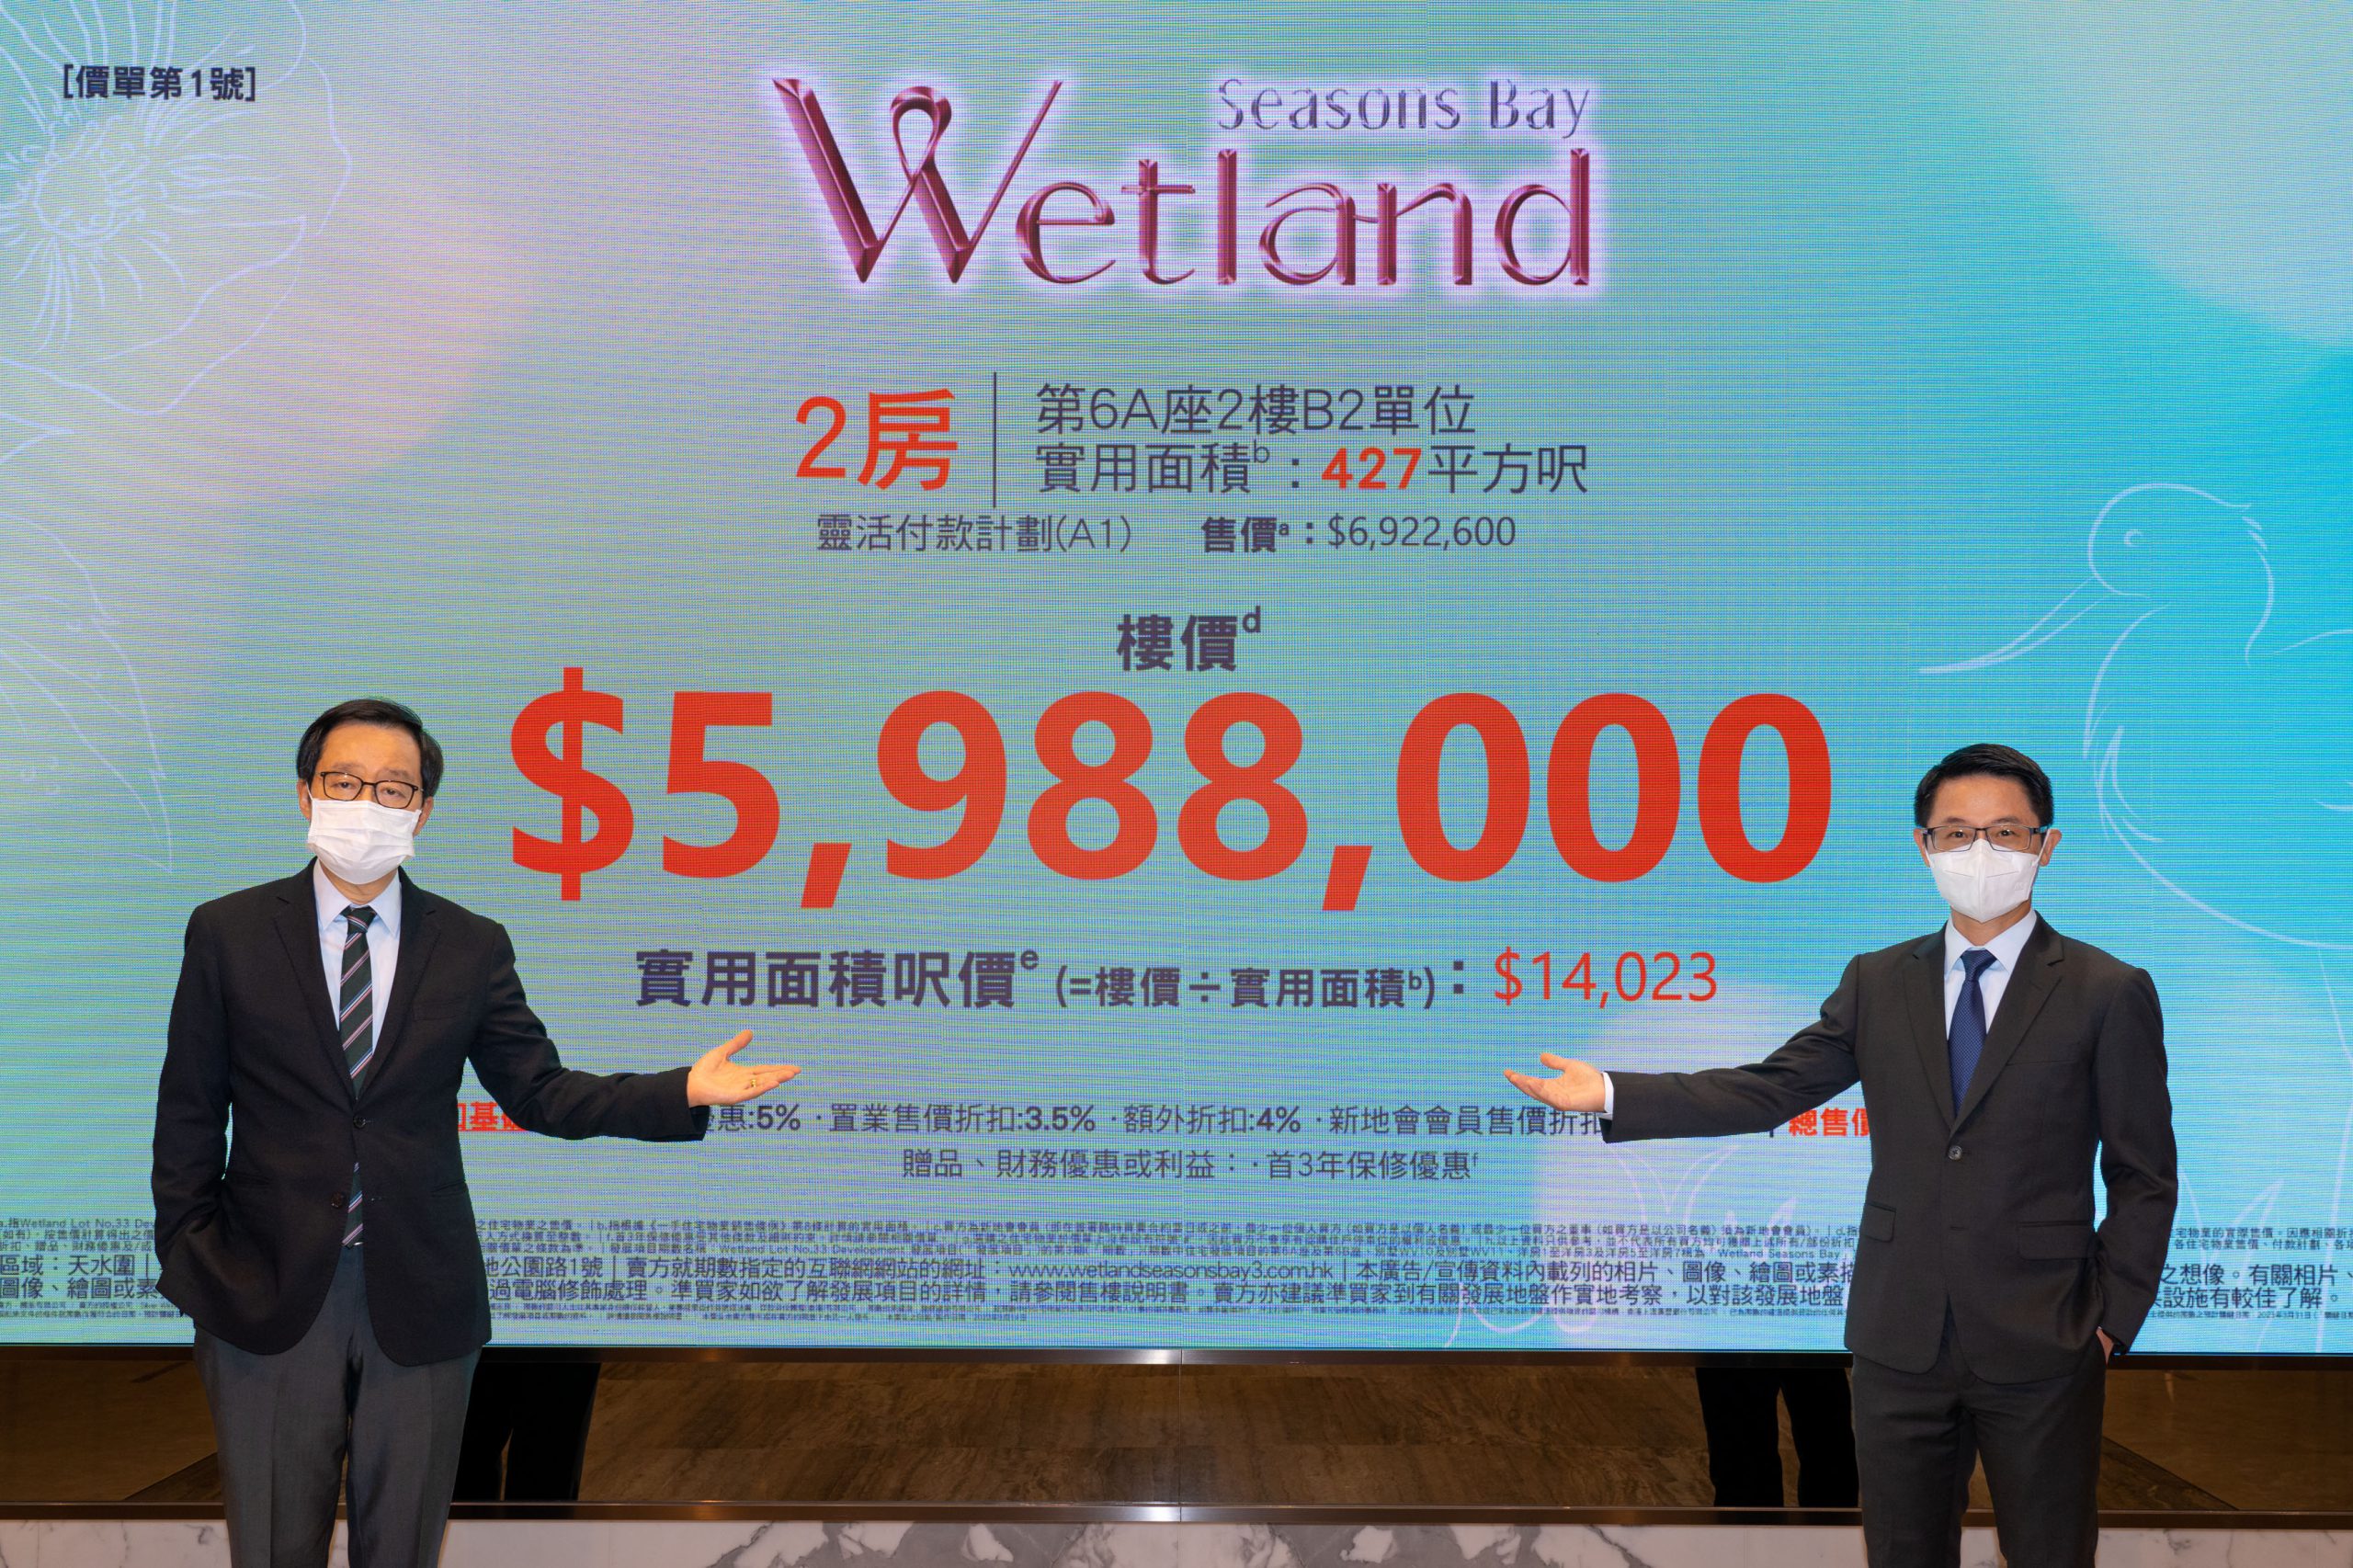 第3期「Wetland Seasons Bay」第1號價單，折實平均呎價為$14,186。